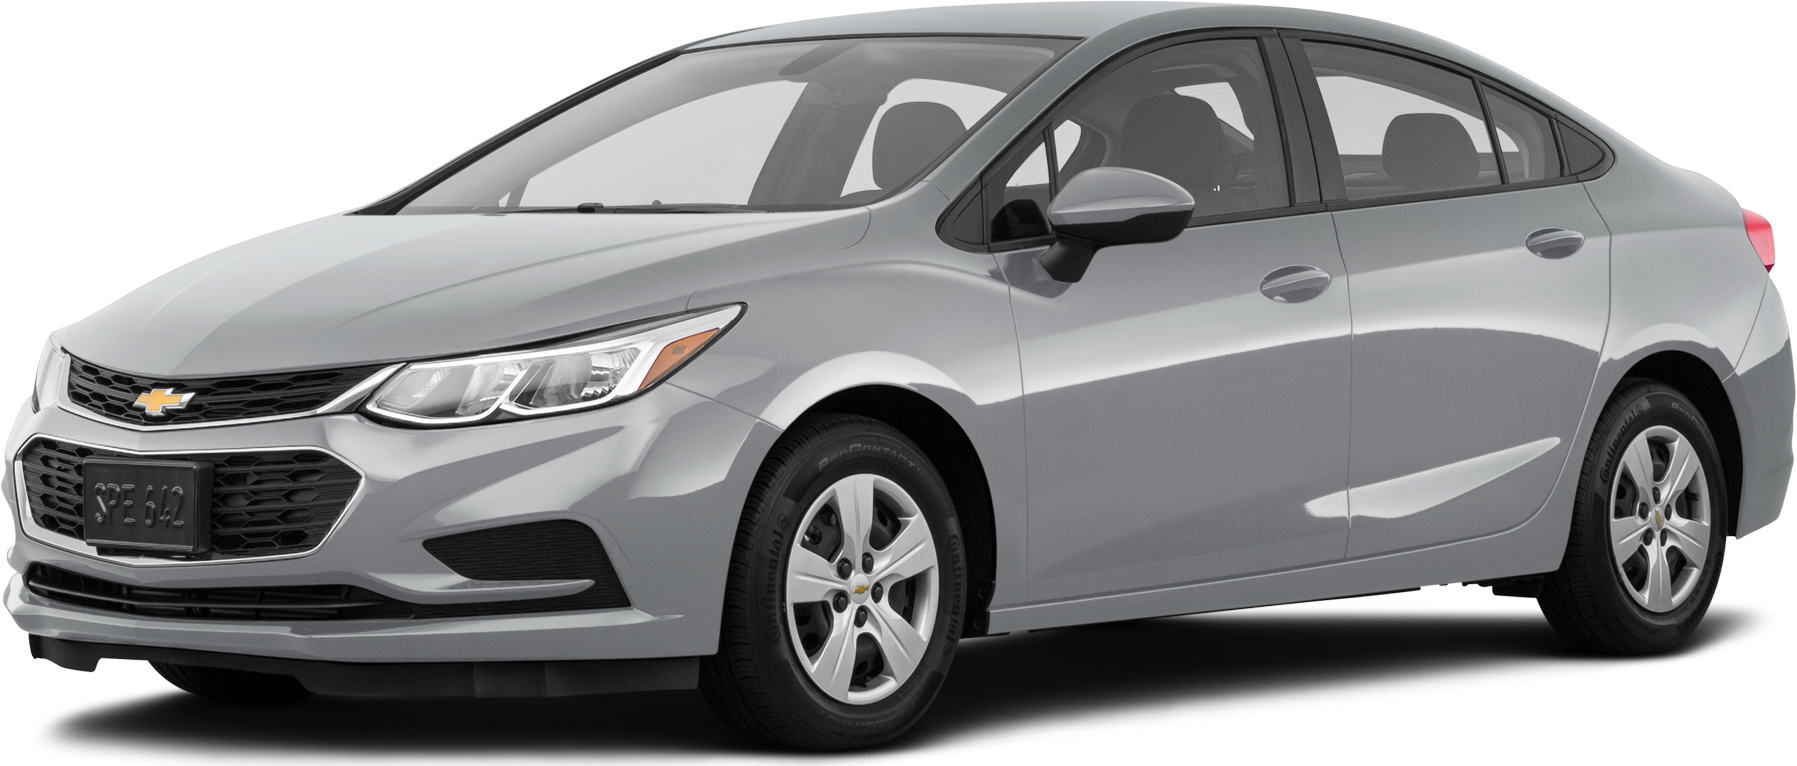 Đánh giá xe Chevrolet Cruze 2019 Mẫu sedan hạng C nổi bật nhất